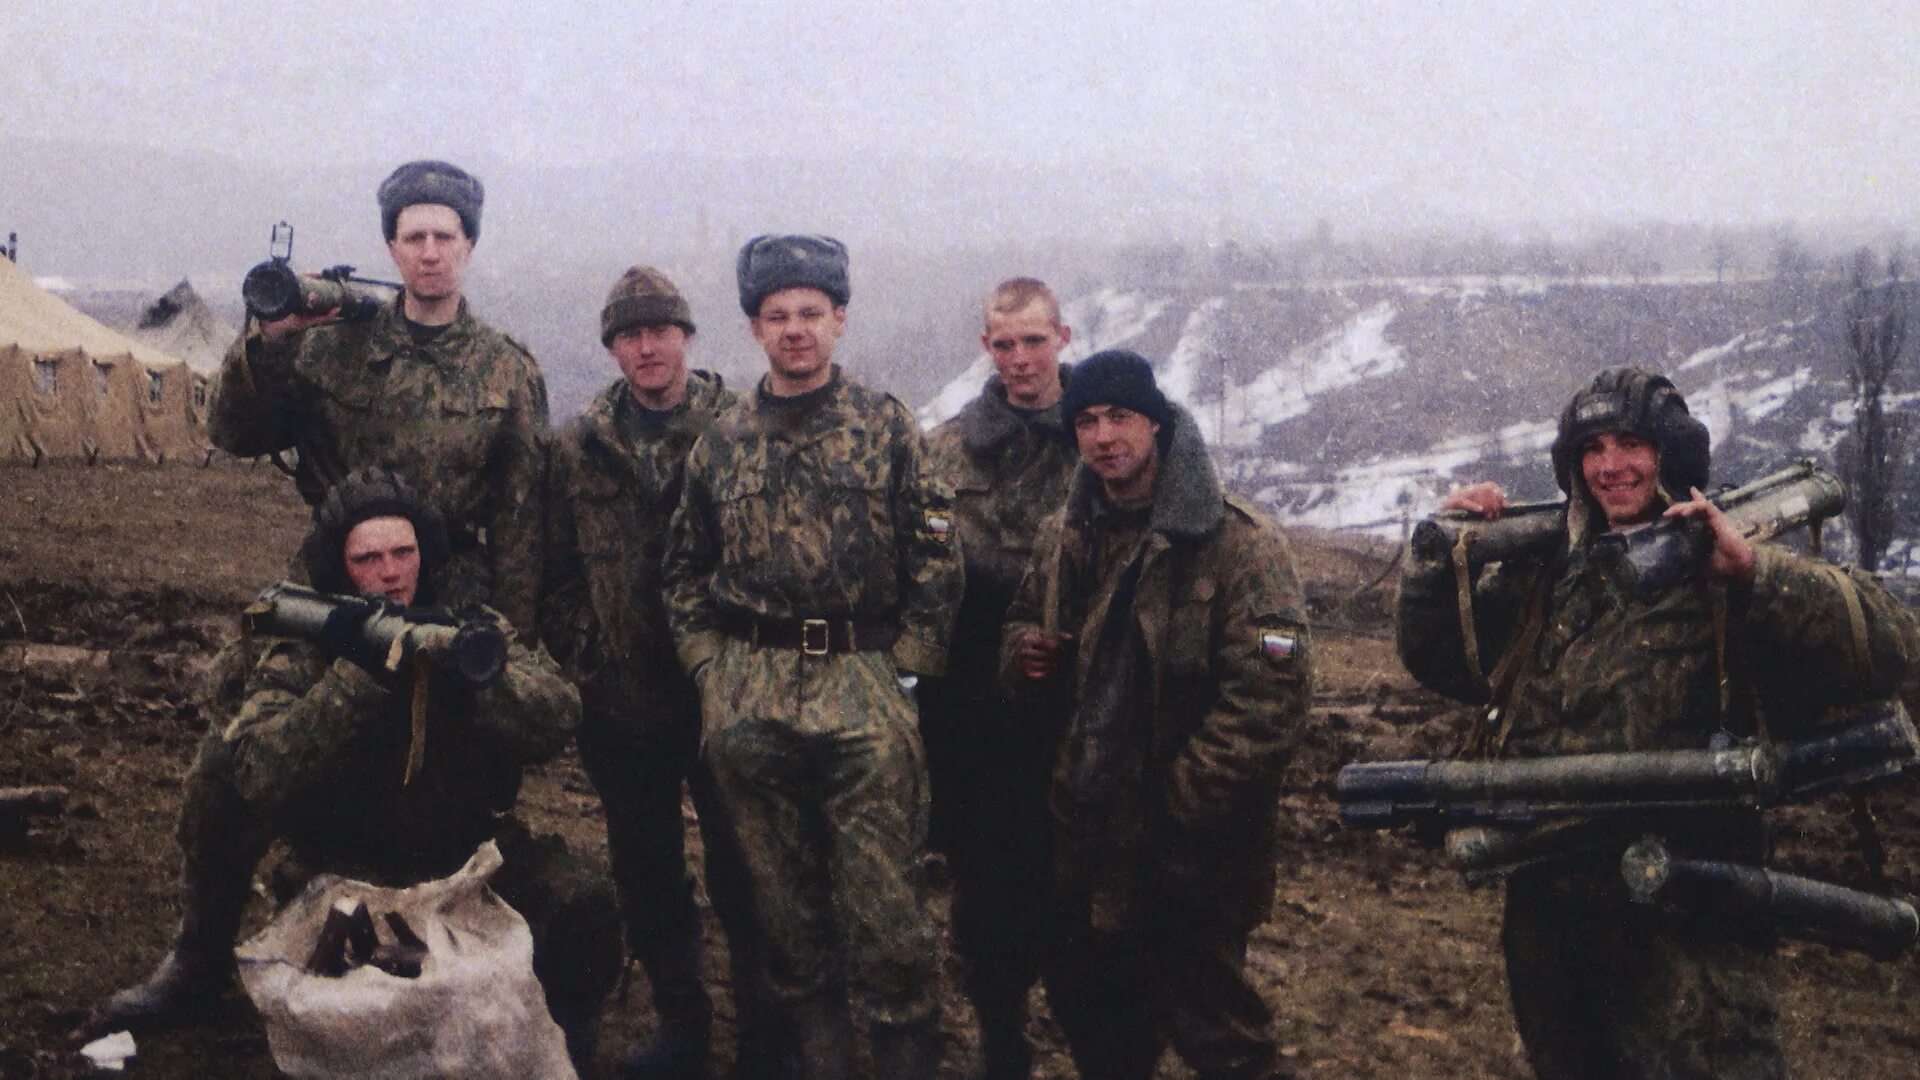 Аргунское ущелье 2000 6 рота. Бой в Аргунском ущелье в 2000. Псковский десант высота 776. Аргунское ущелье 2000 год 6 рота.